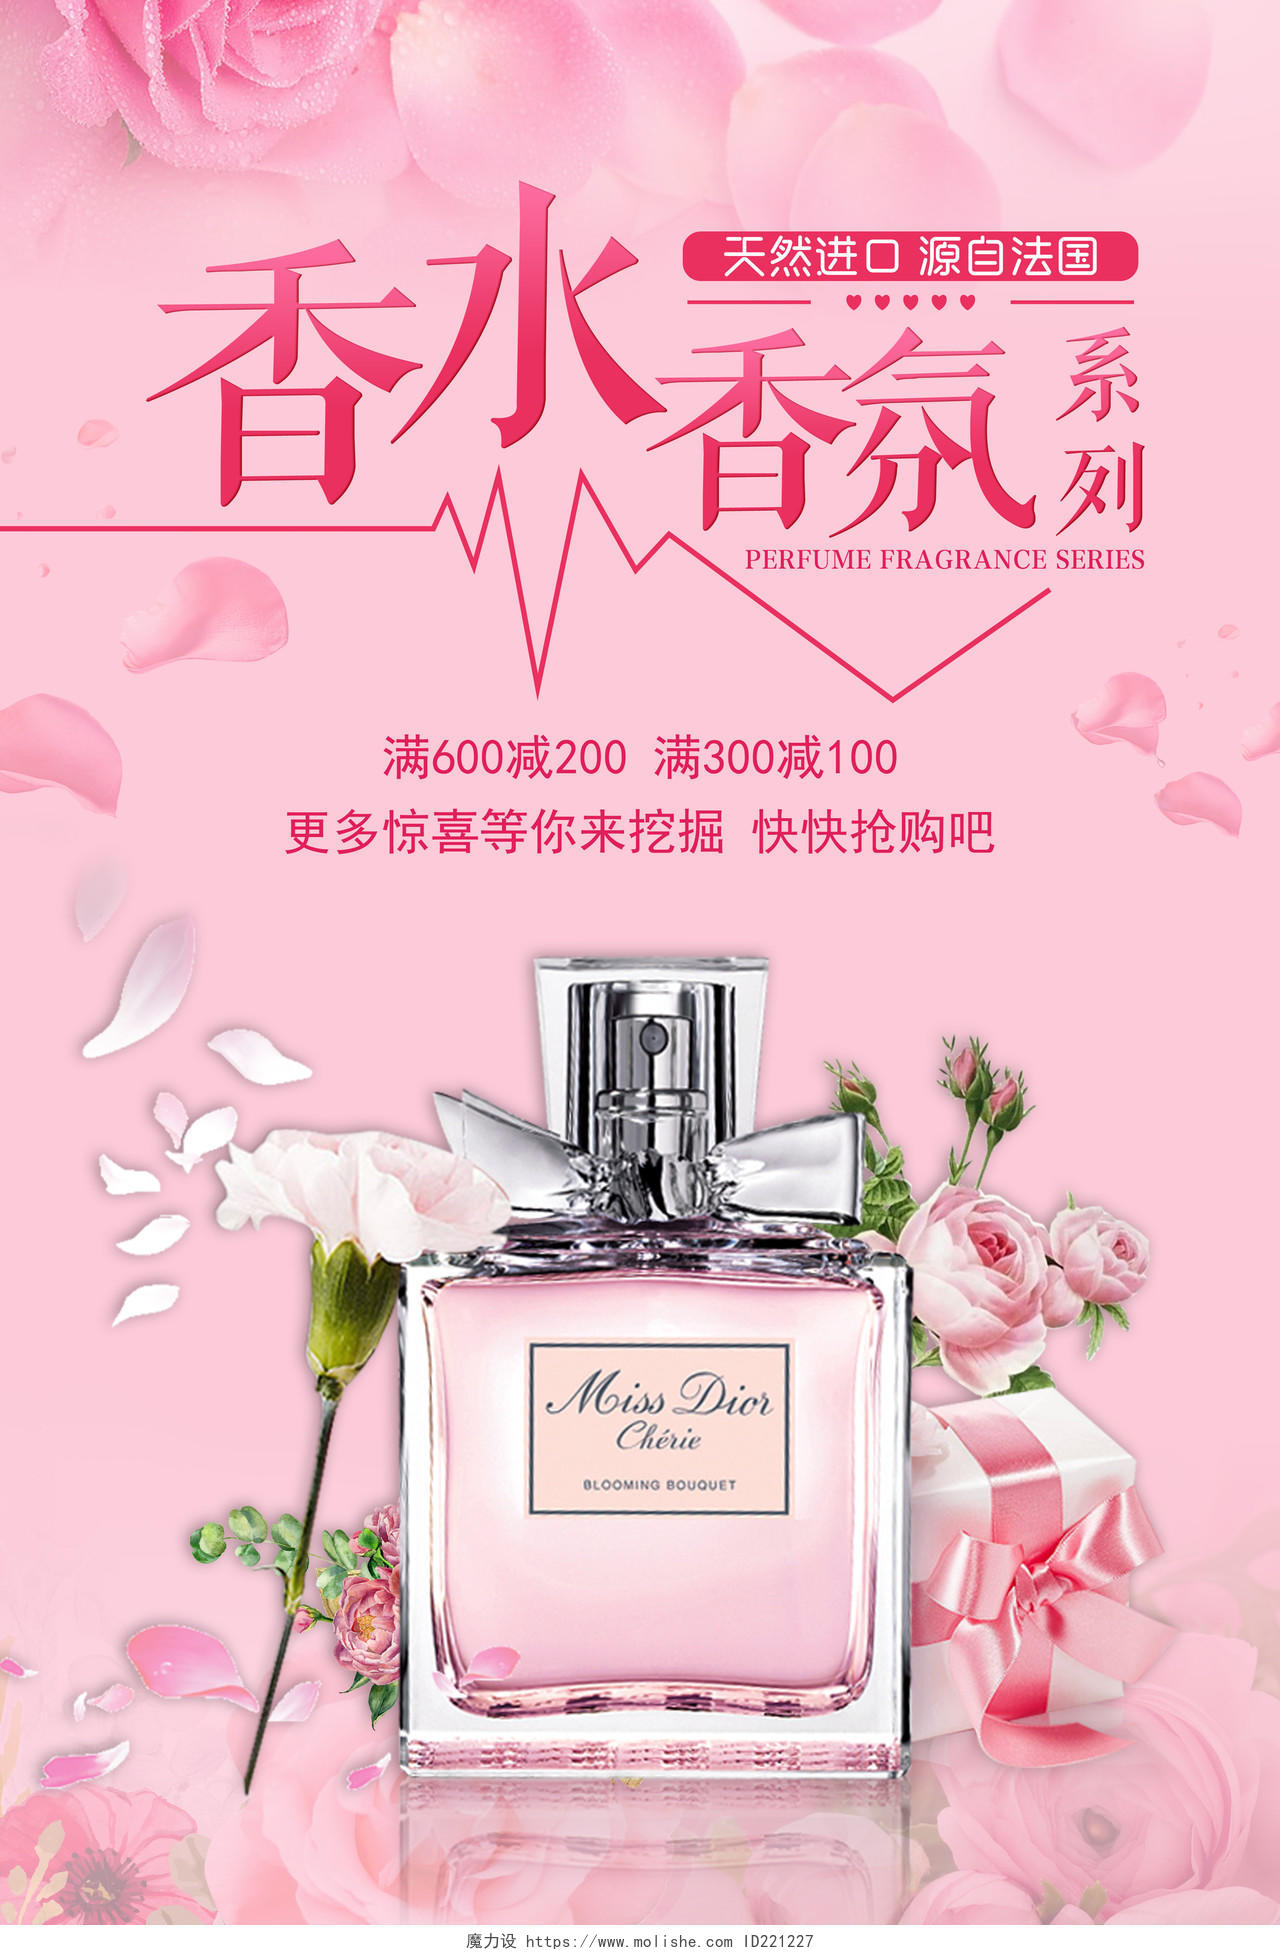 香水香氛系列商场促销广告宣传海报